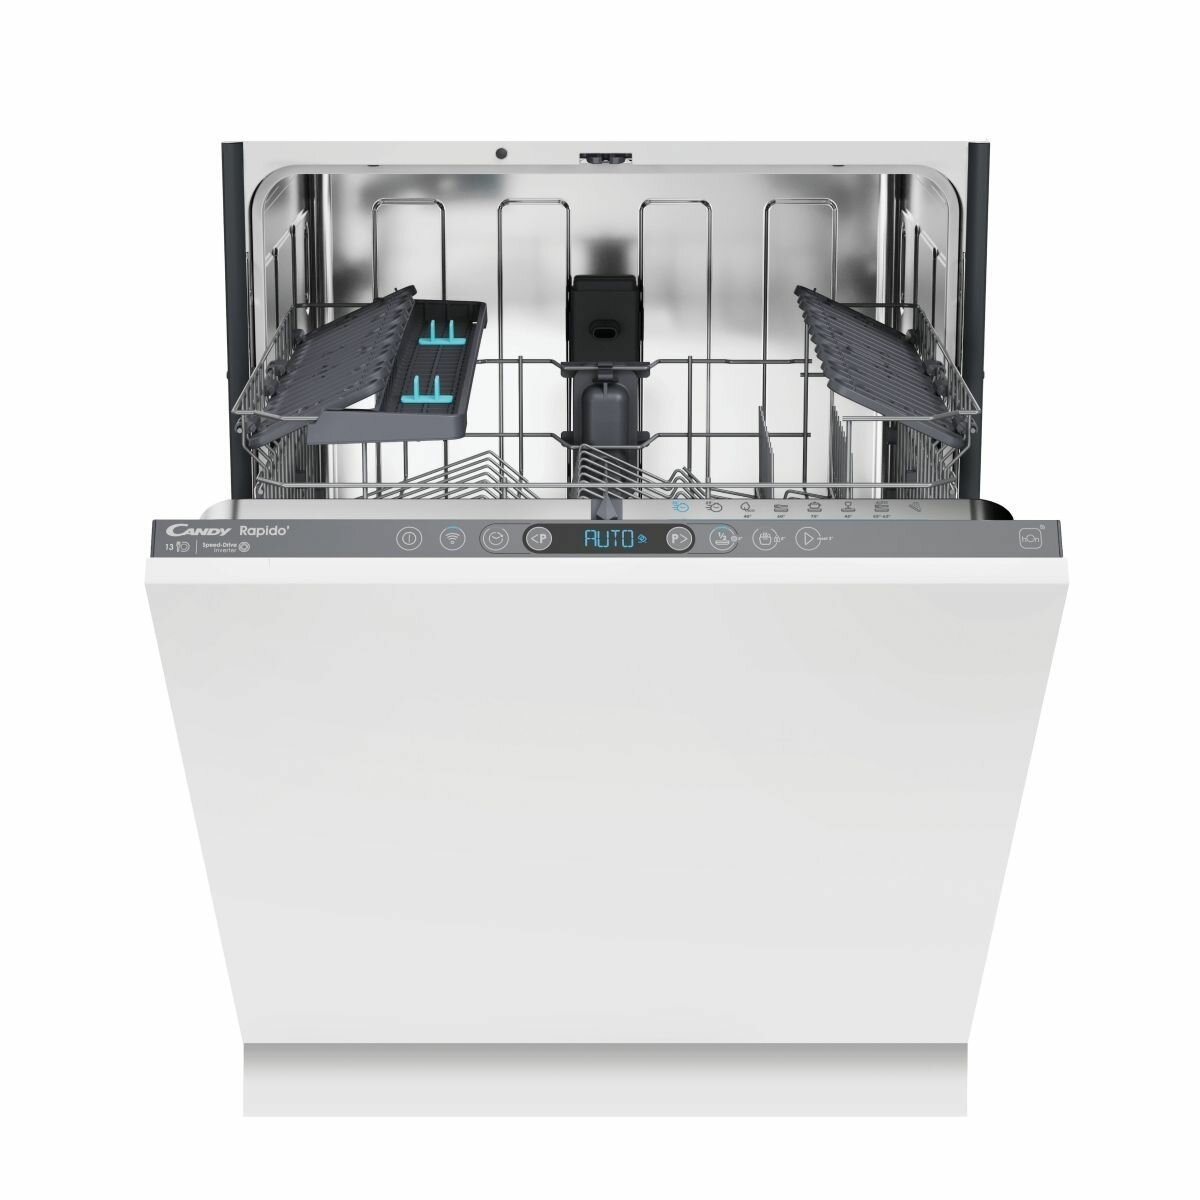 Посудомоечная машина встраиваемая 60 см Candy Rapido CI 3C9F0A-08 на 13 комплектов посуды 8 программ инверторный мотор электронное управление отсрочка старта беспроводное подключение hOn конденсационная сушка программа быстрой мойки